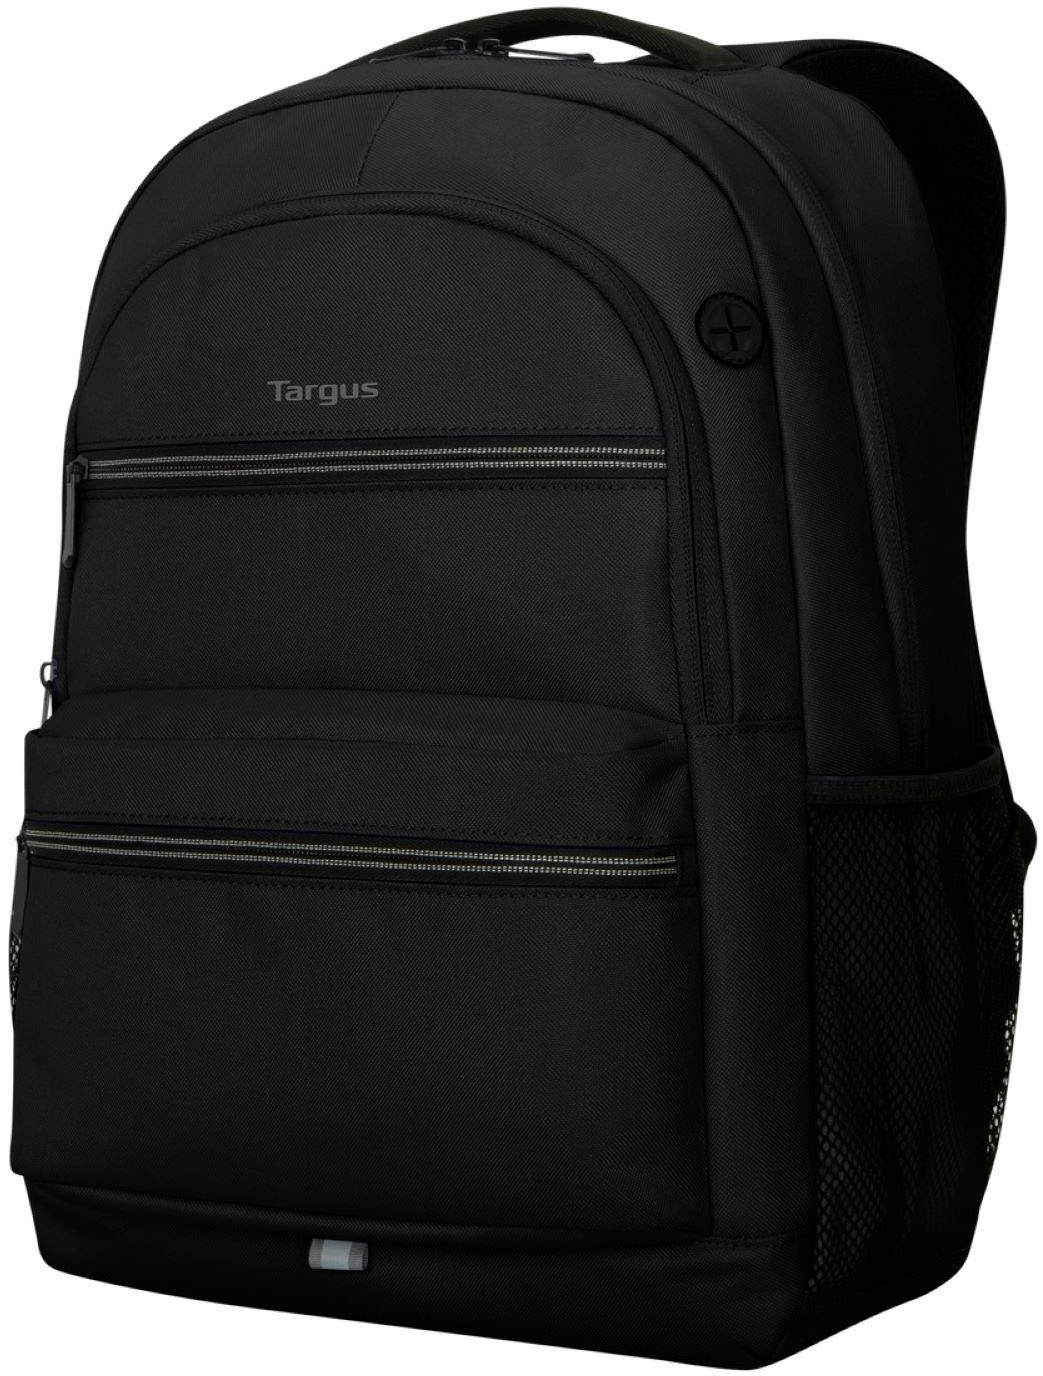 Left View: Targus - Octave II Backpack for 15.6” Laptops - Black